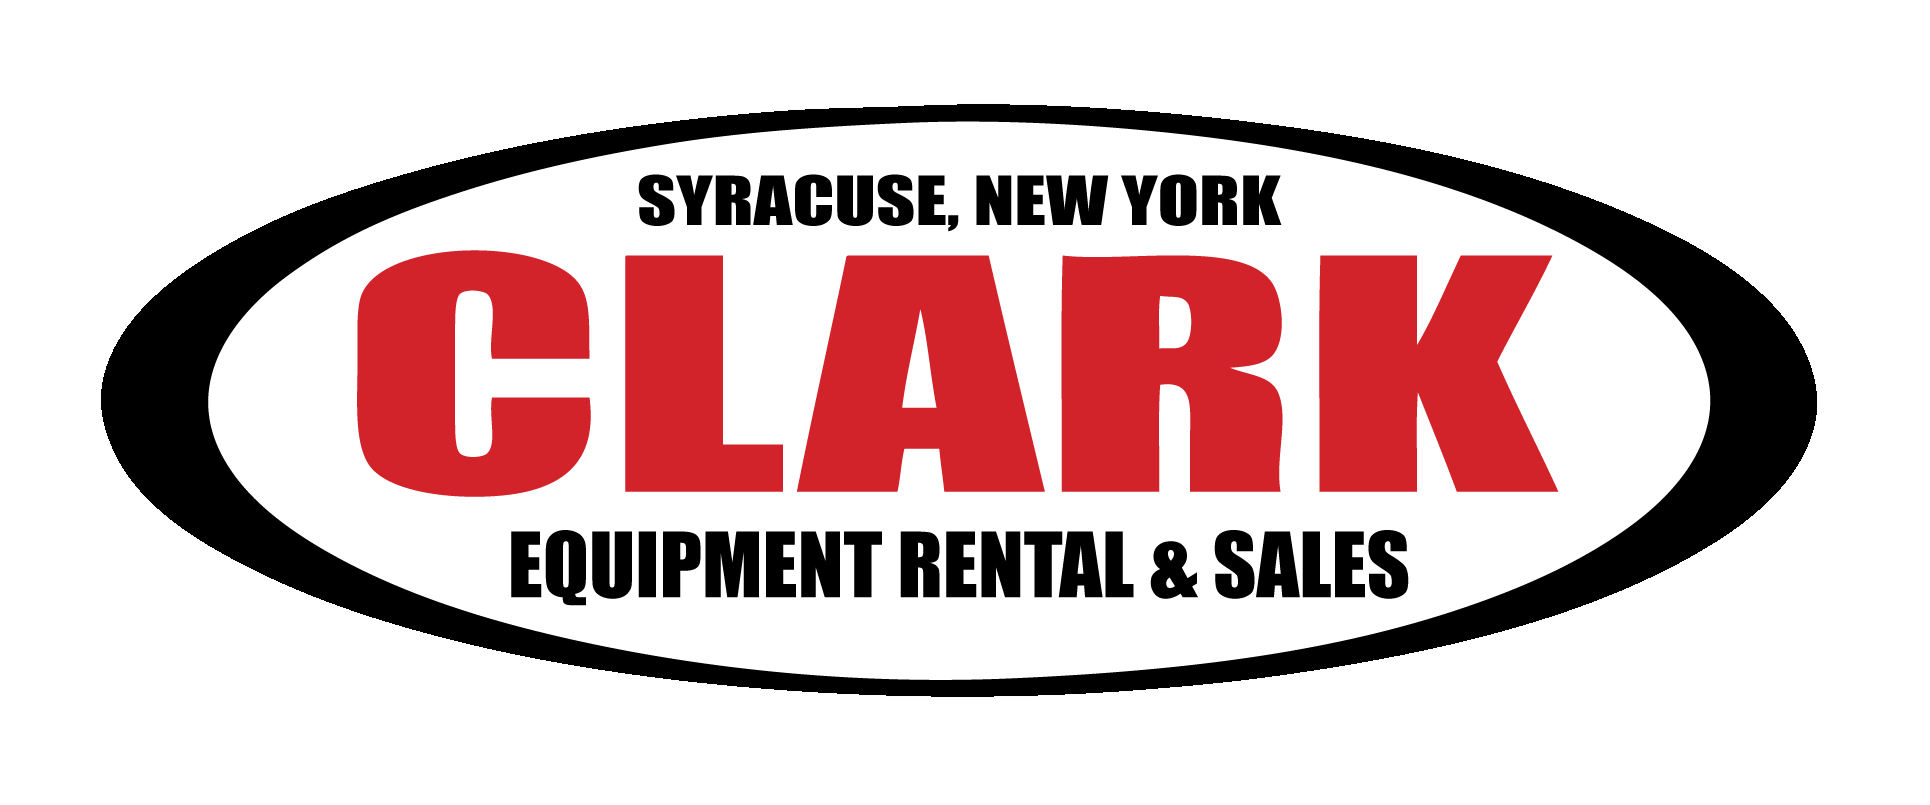 Clark Equipment Rental & Sales